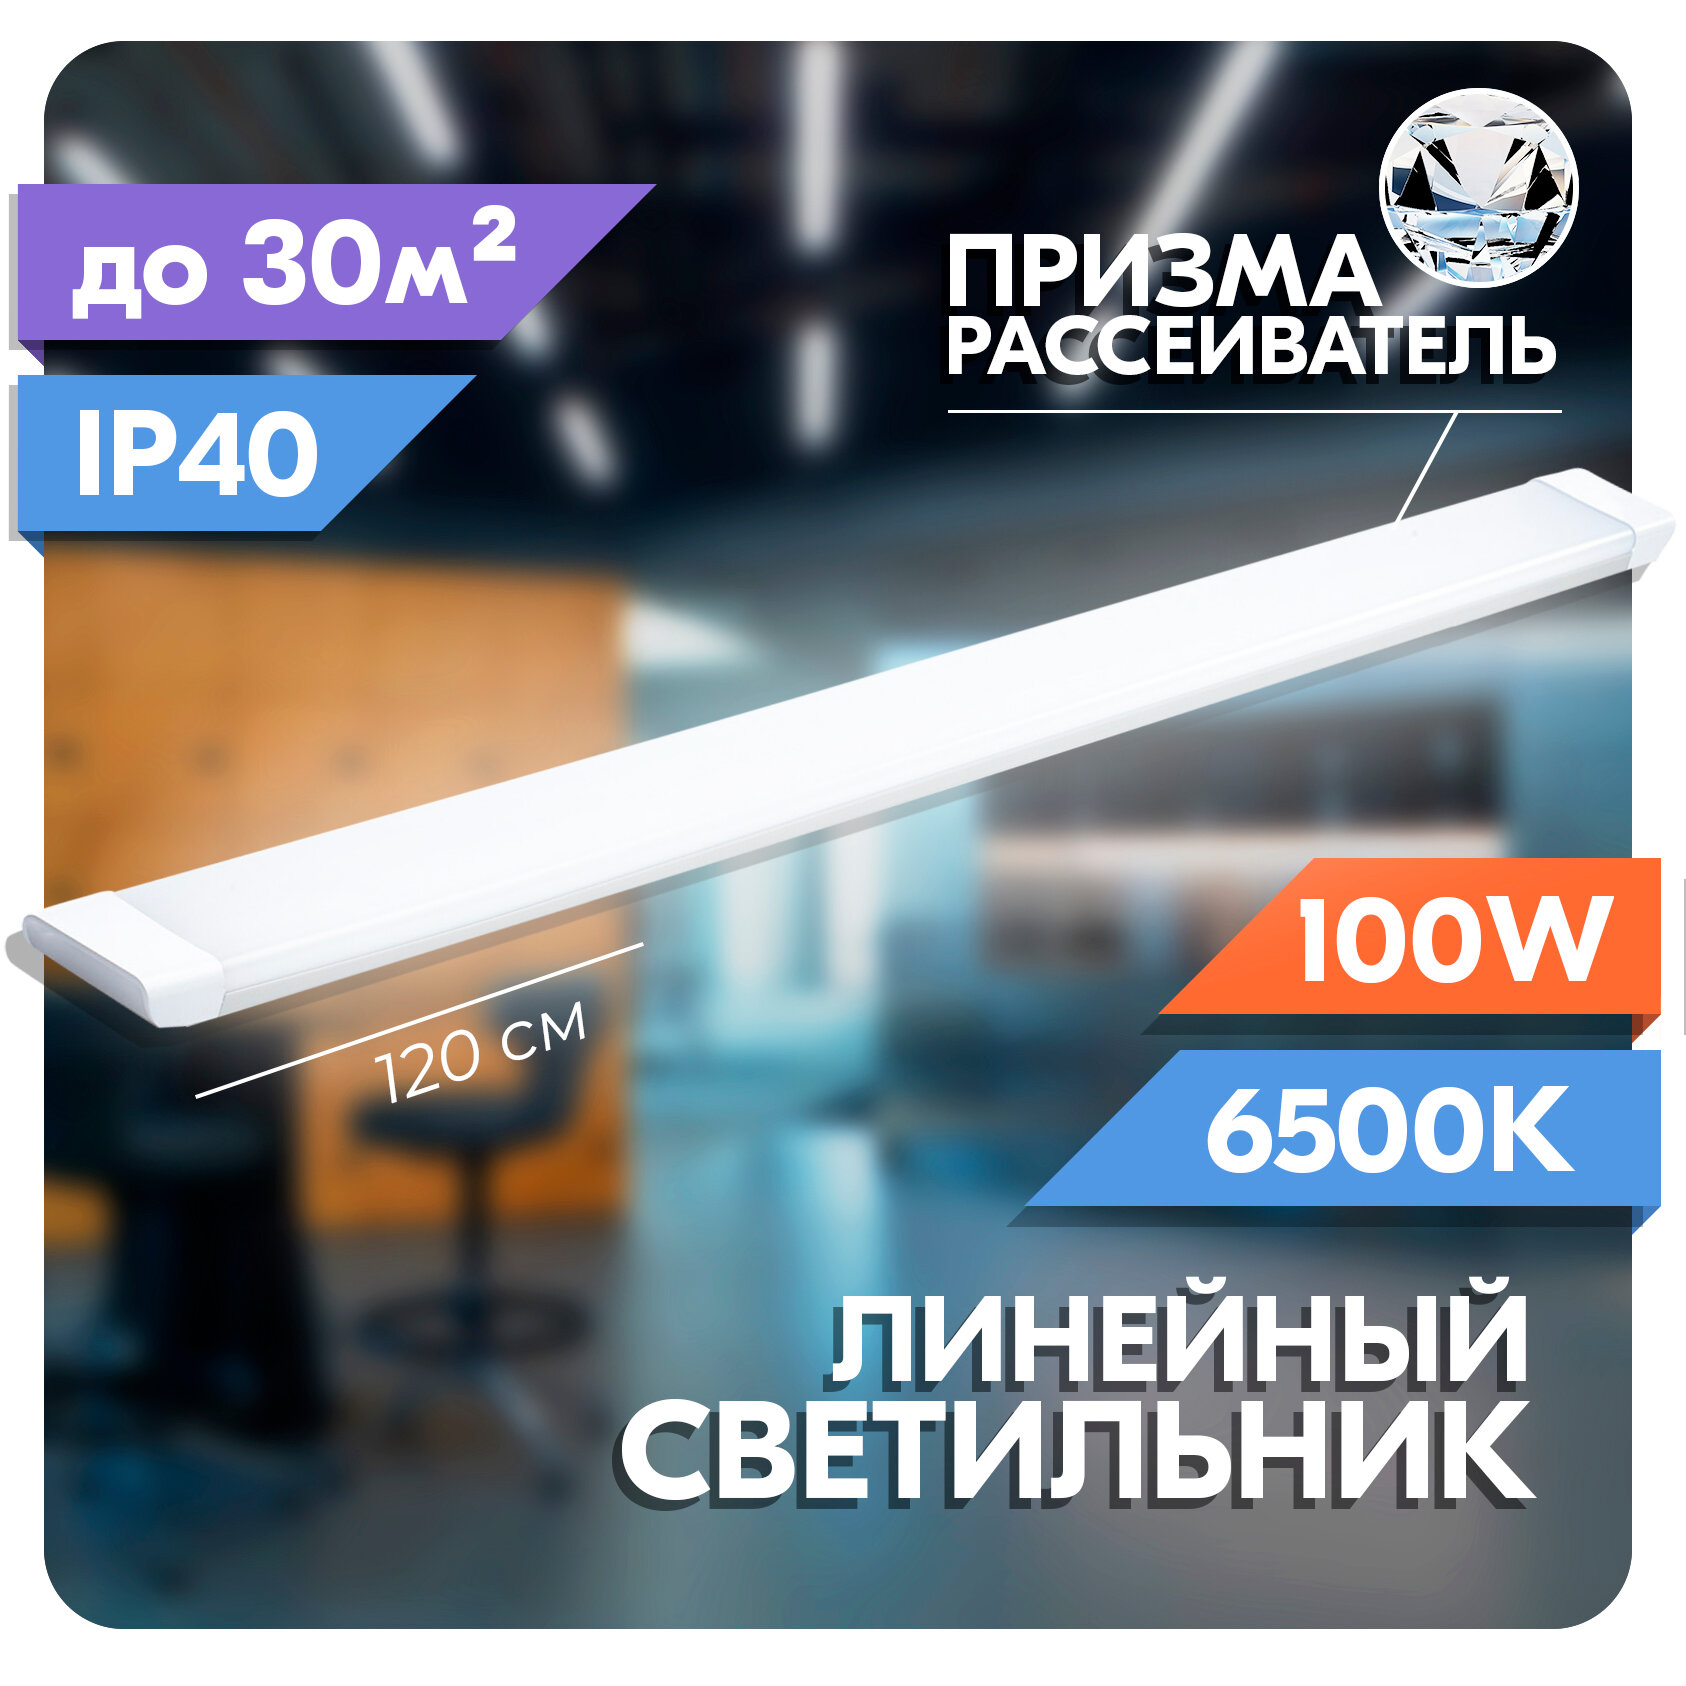 Светильник линейный светодиодный RSV 100 Вт рассеиватель призма 6500K холодный свет 120х75х25 мм